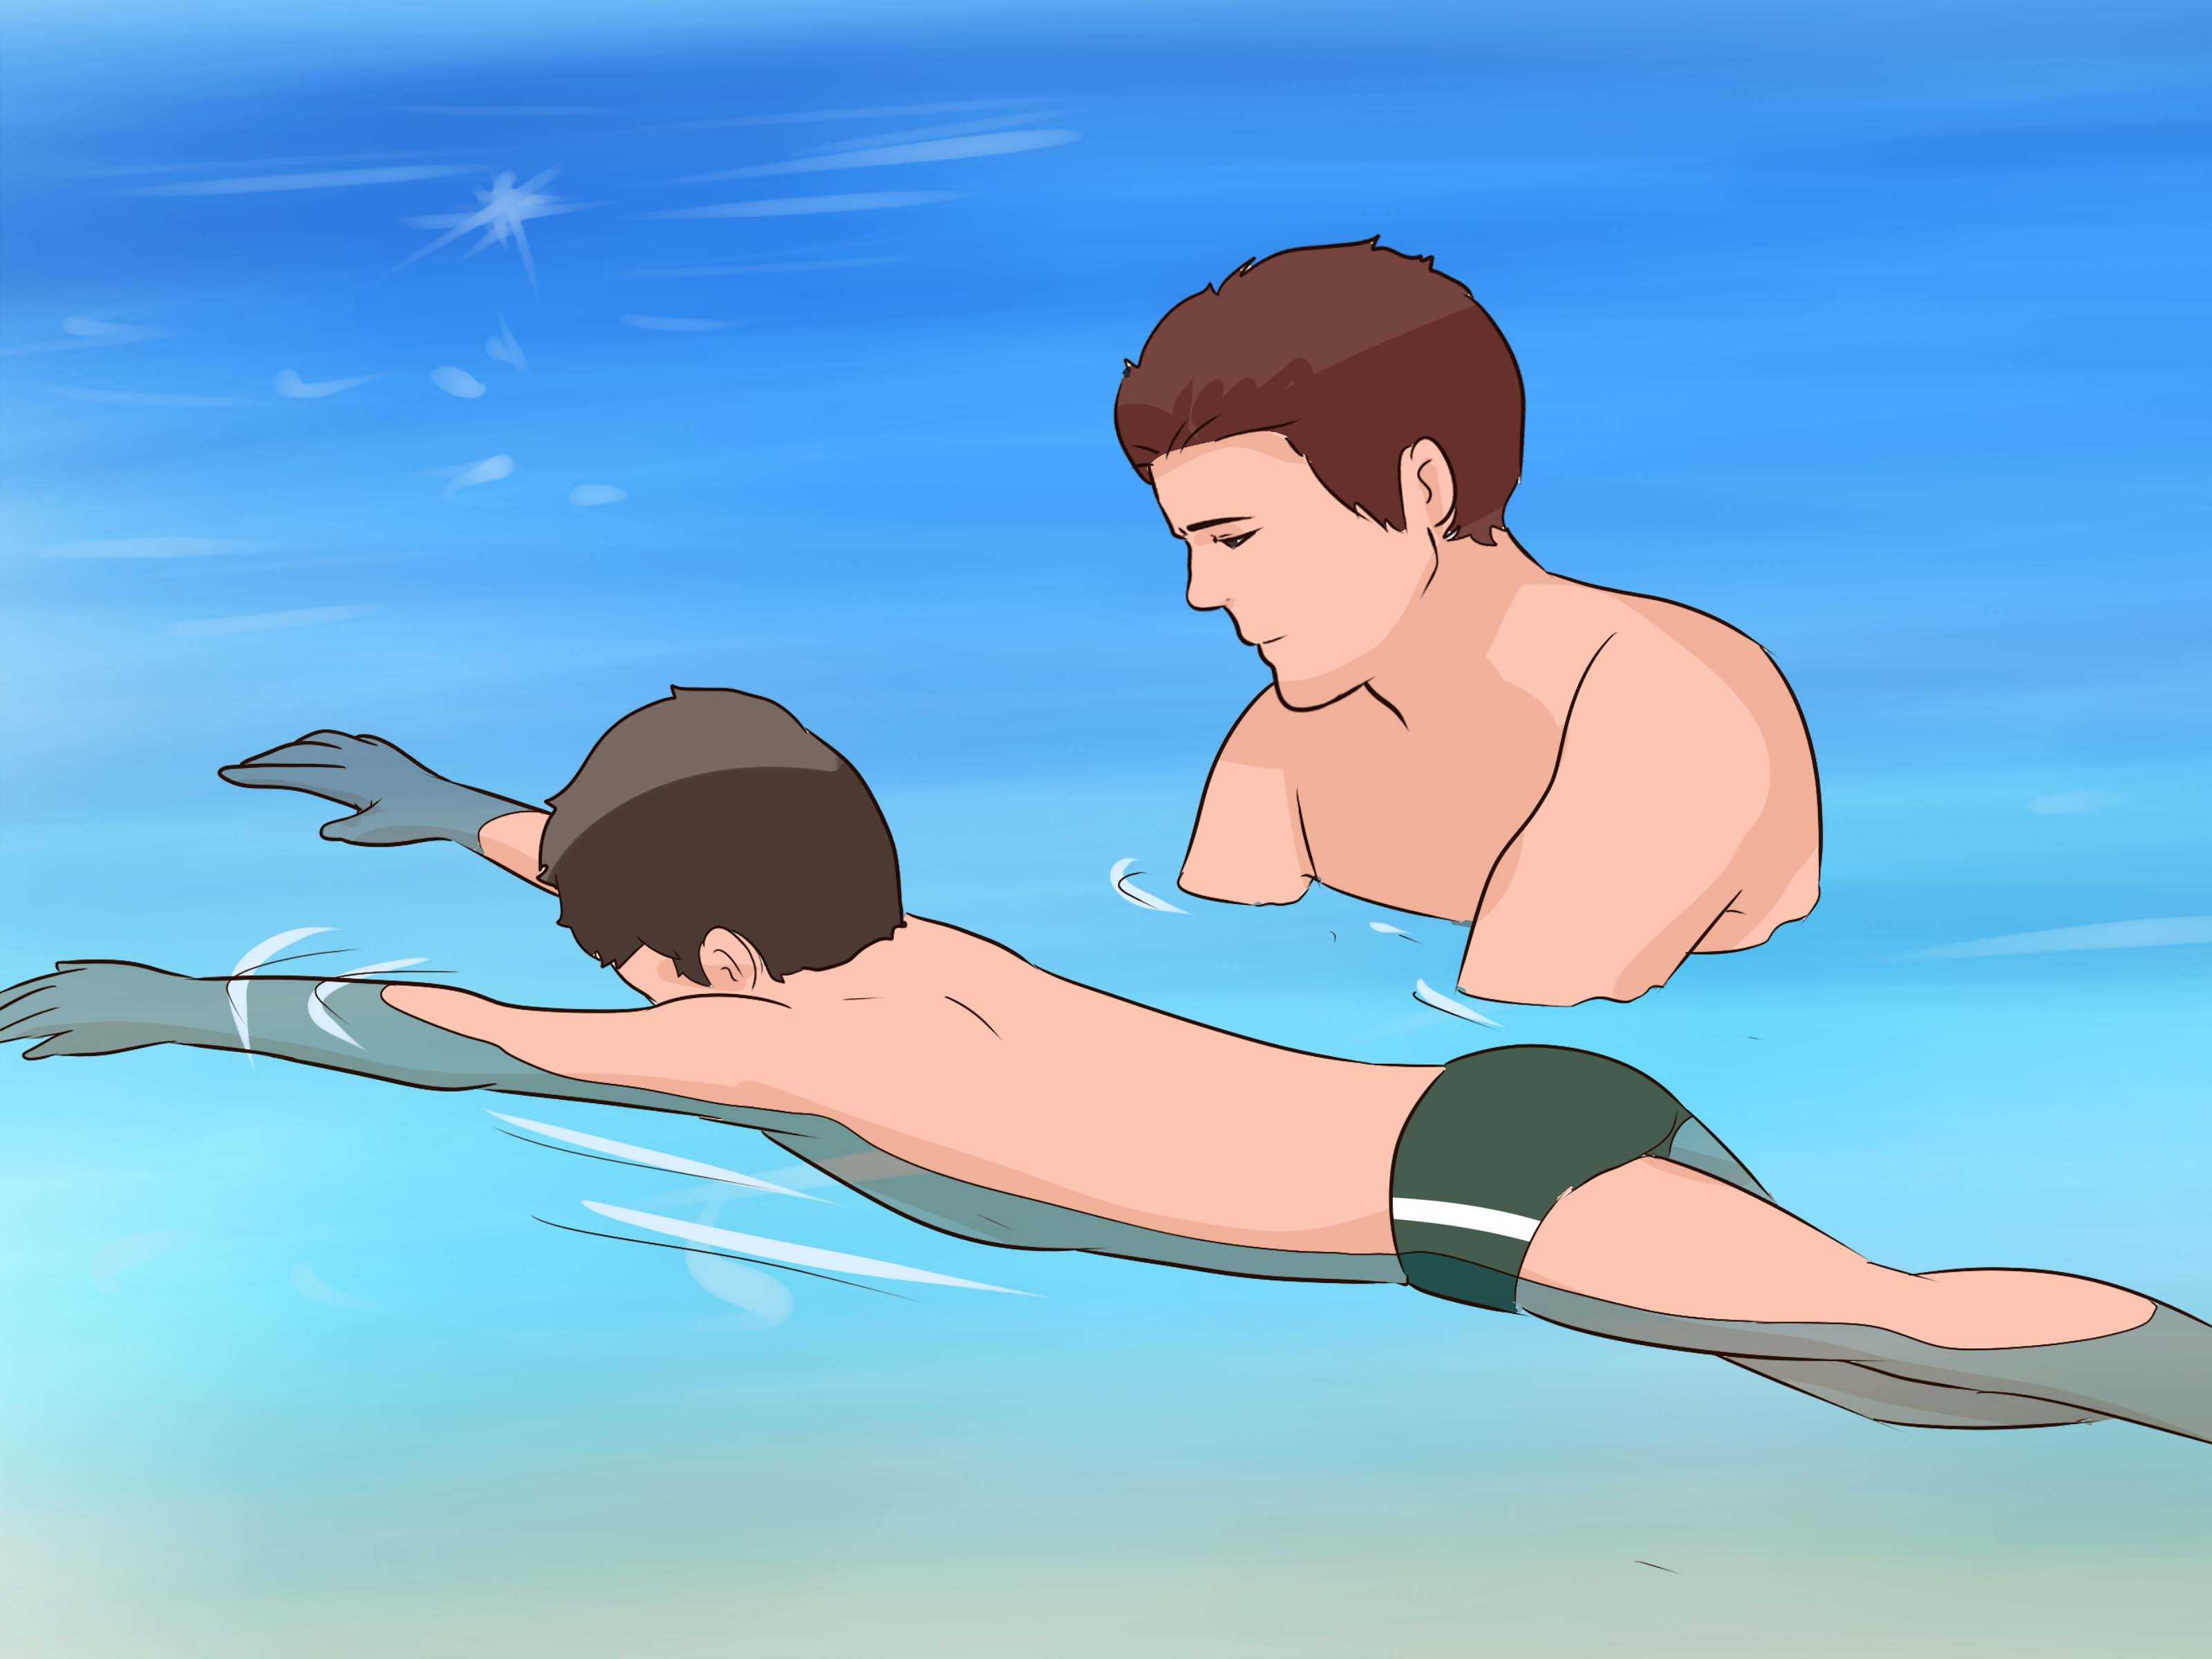 Как научить ребенка плавать в 3, 4, 5 лет? советы для родителей - журнал kinderboo.ru